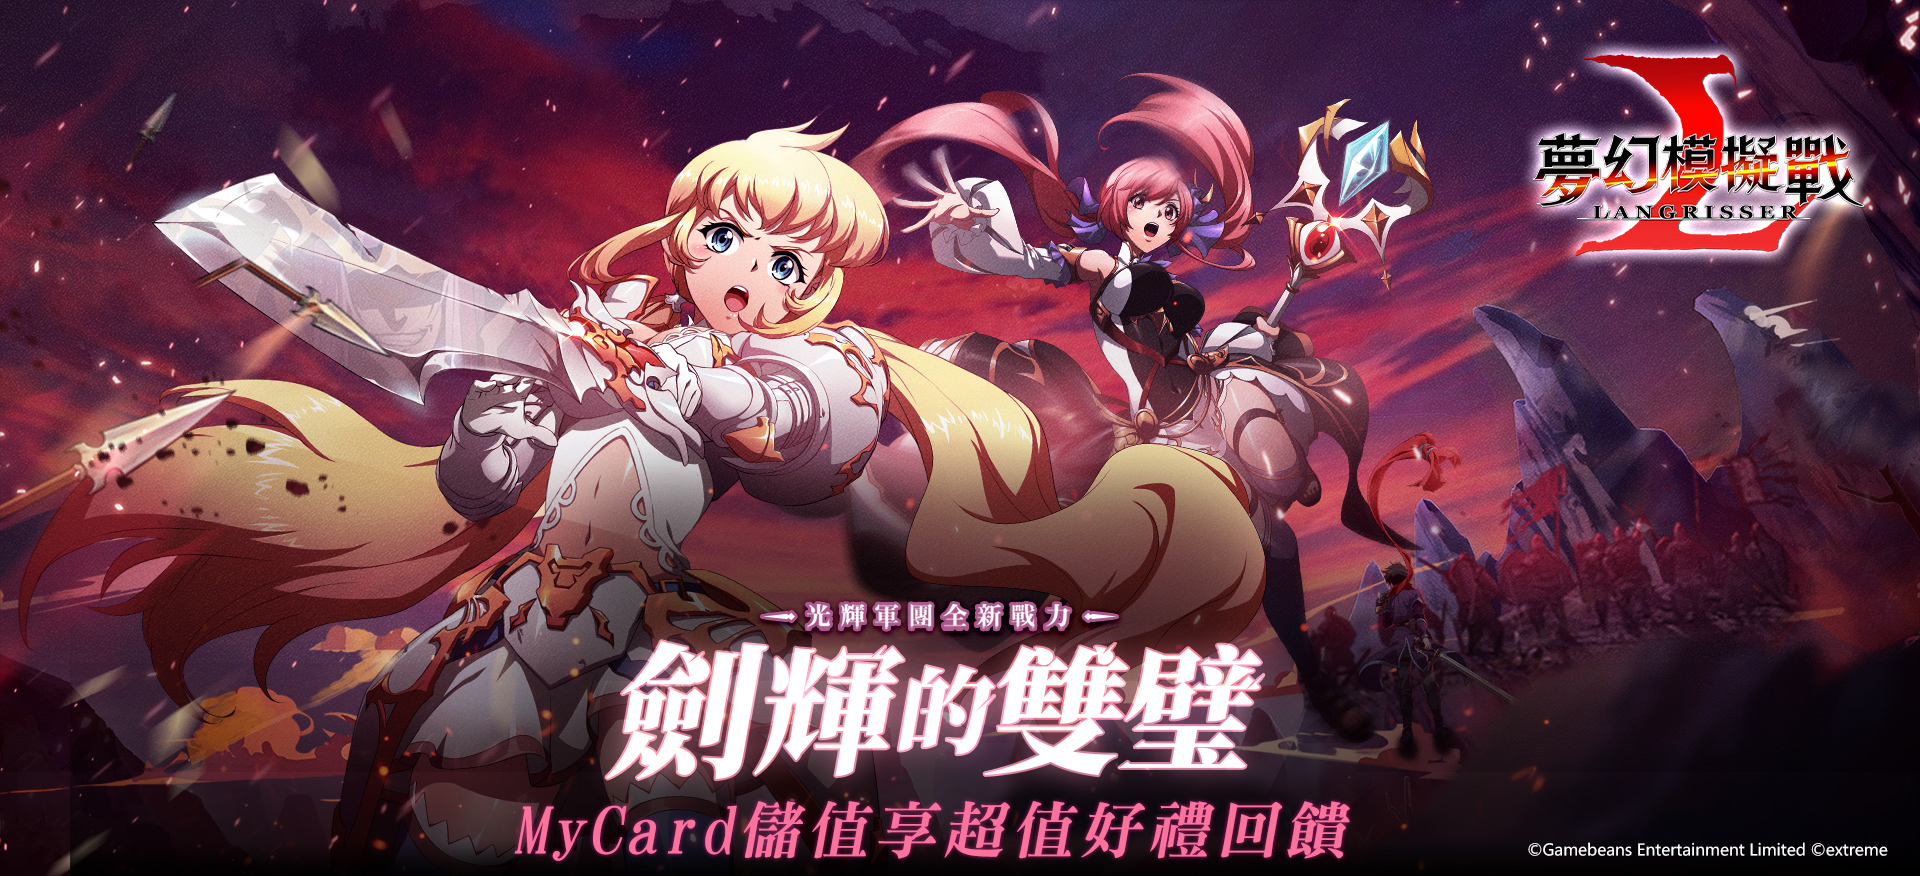   《夢幻模擬戰》MyCard儲值享超值好禮回饋 | 中華電信